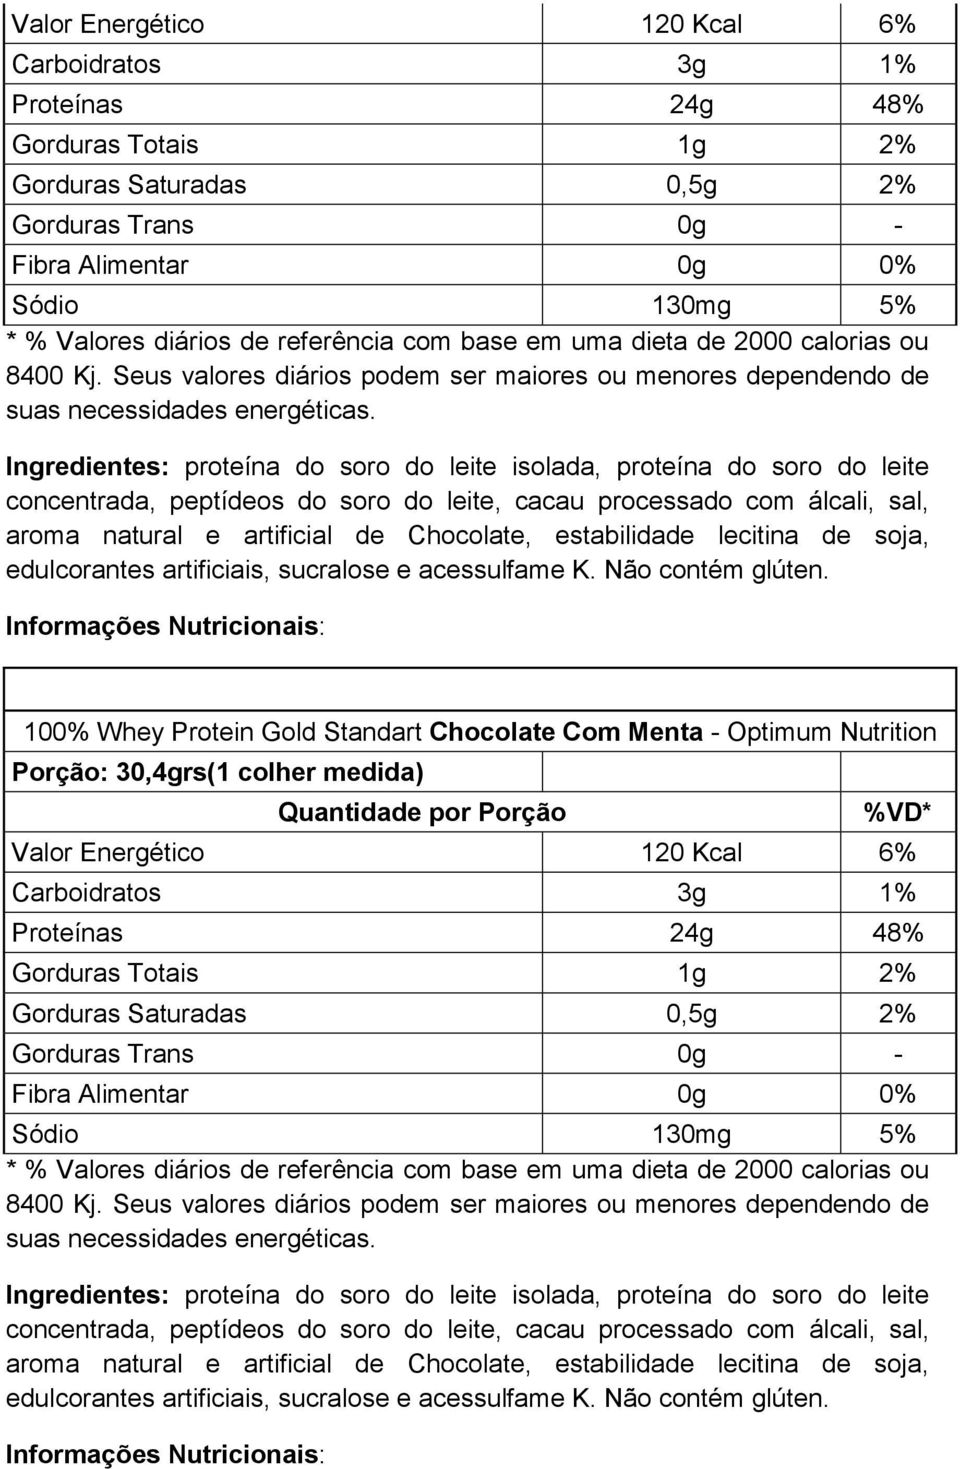 Chocolate Com Menta - Optimum Nutrition  lecitina de